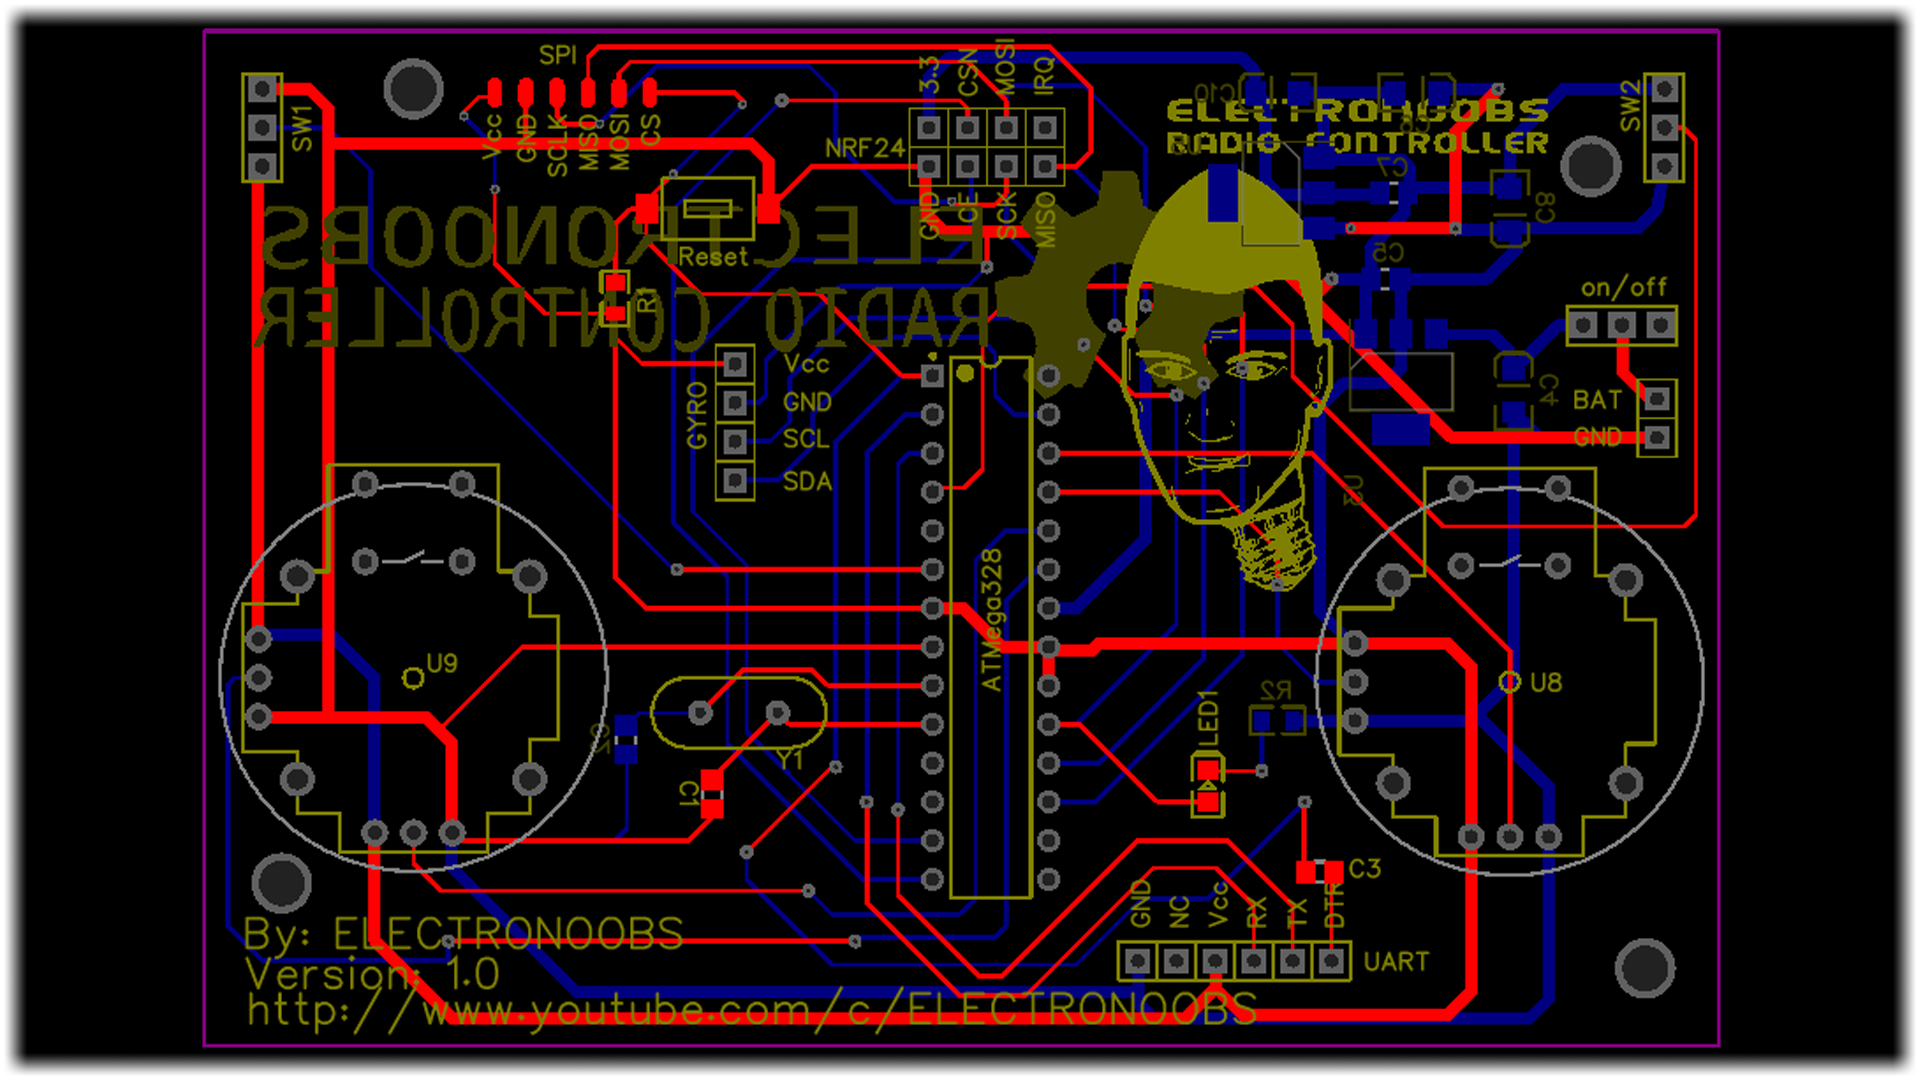 NRF24 Arduino board